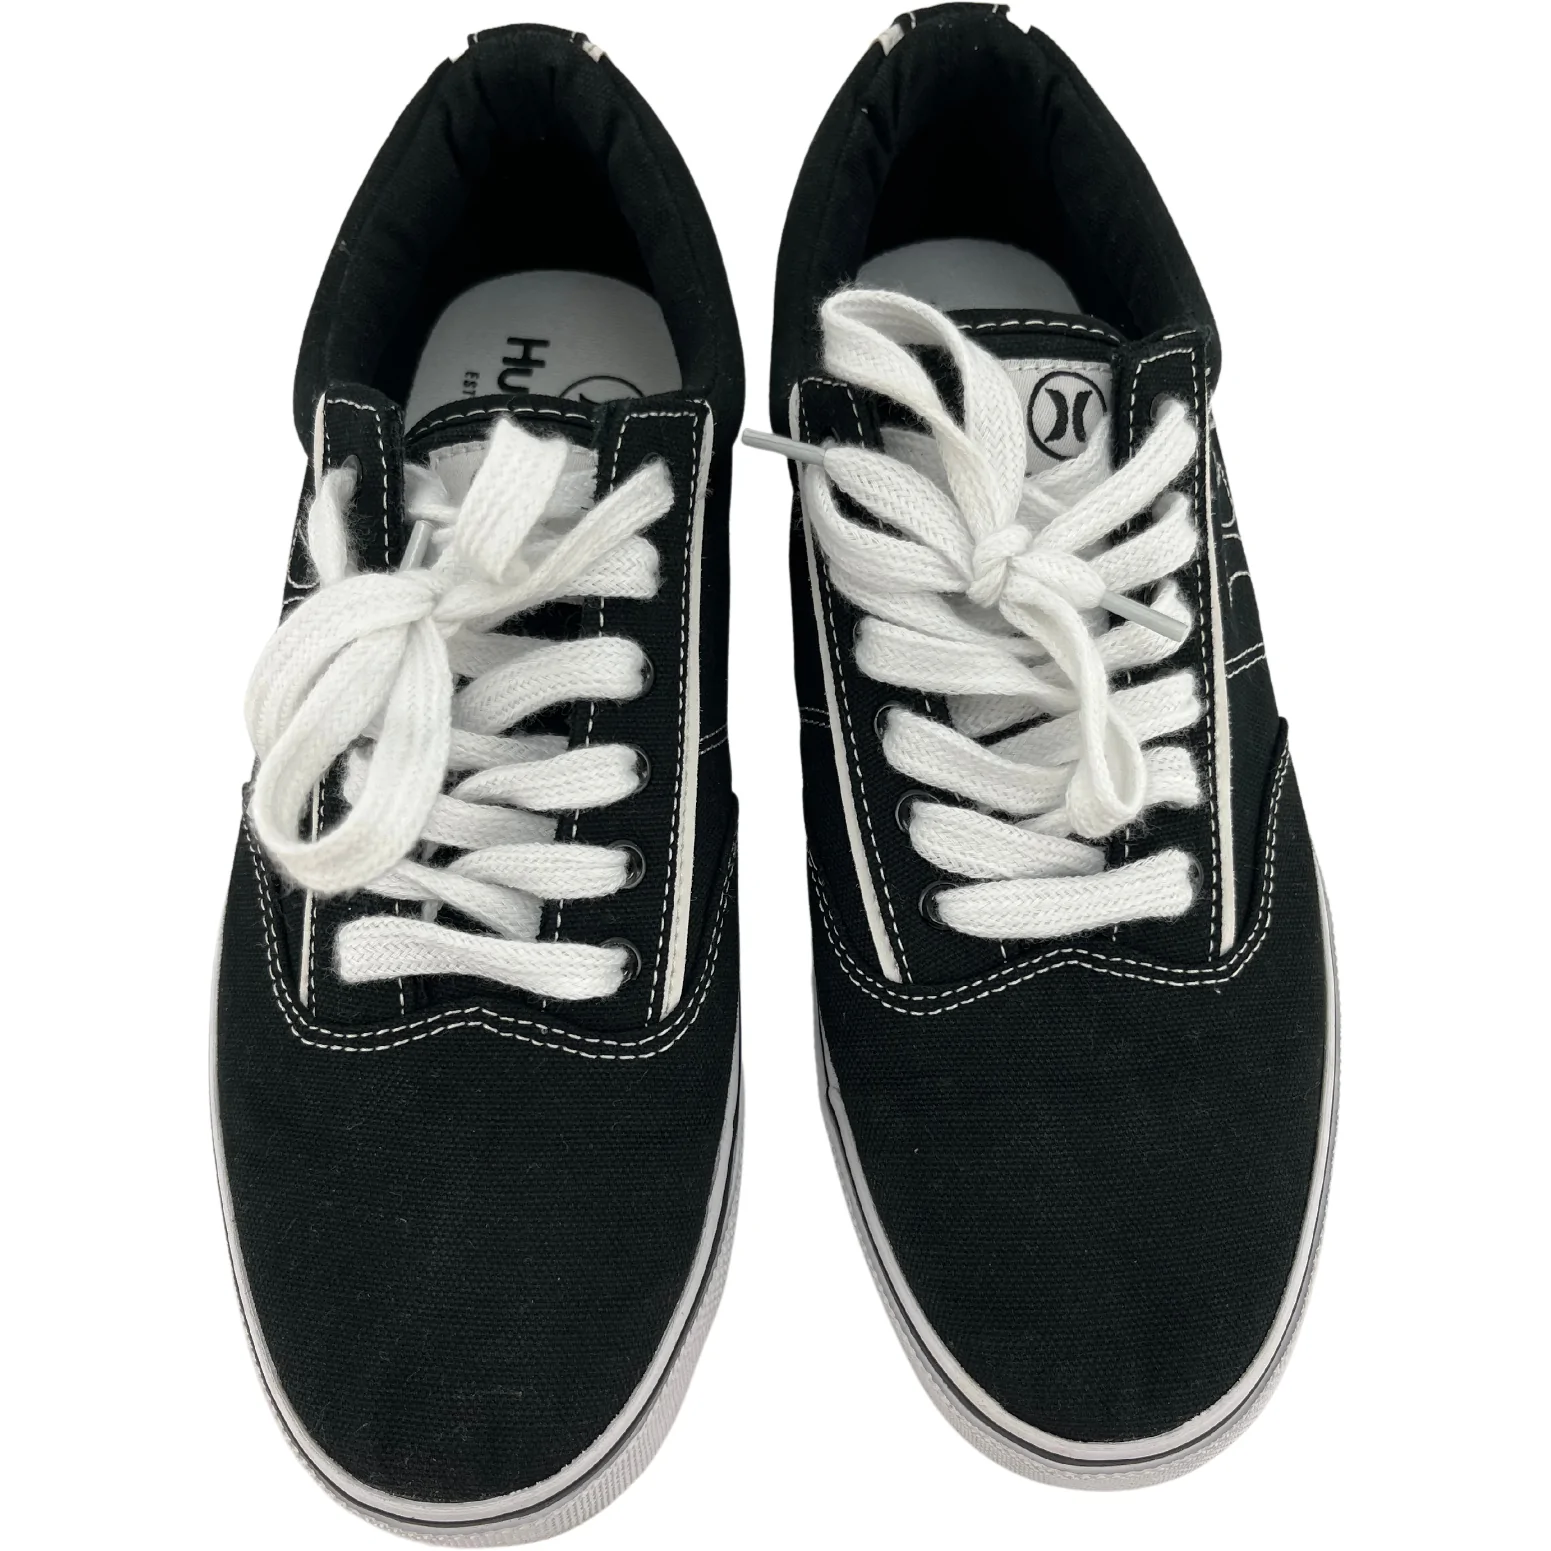 Hurley Men's Sneakers / Men's Shoes / Arlo / Black / Size 8